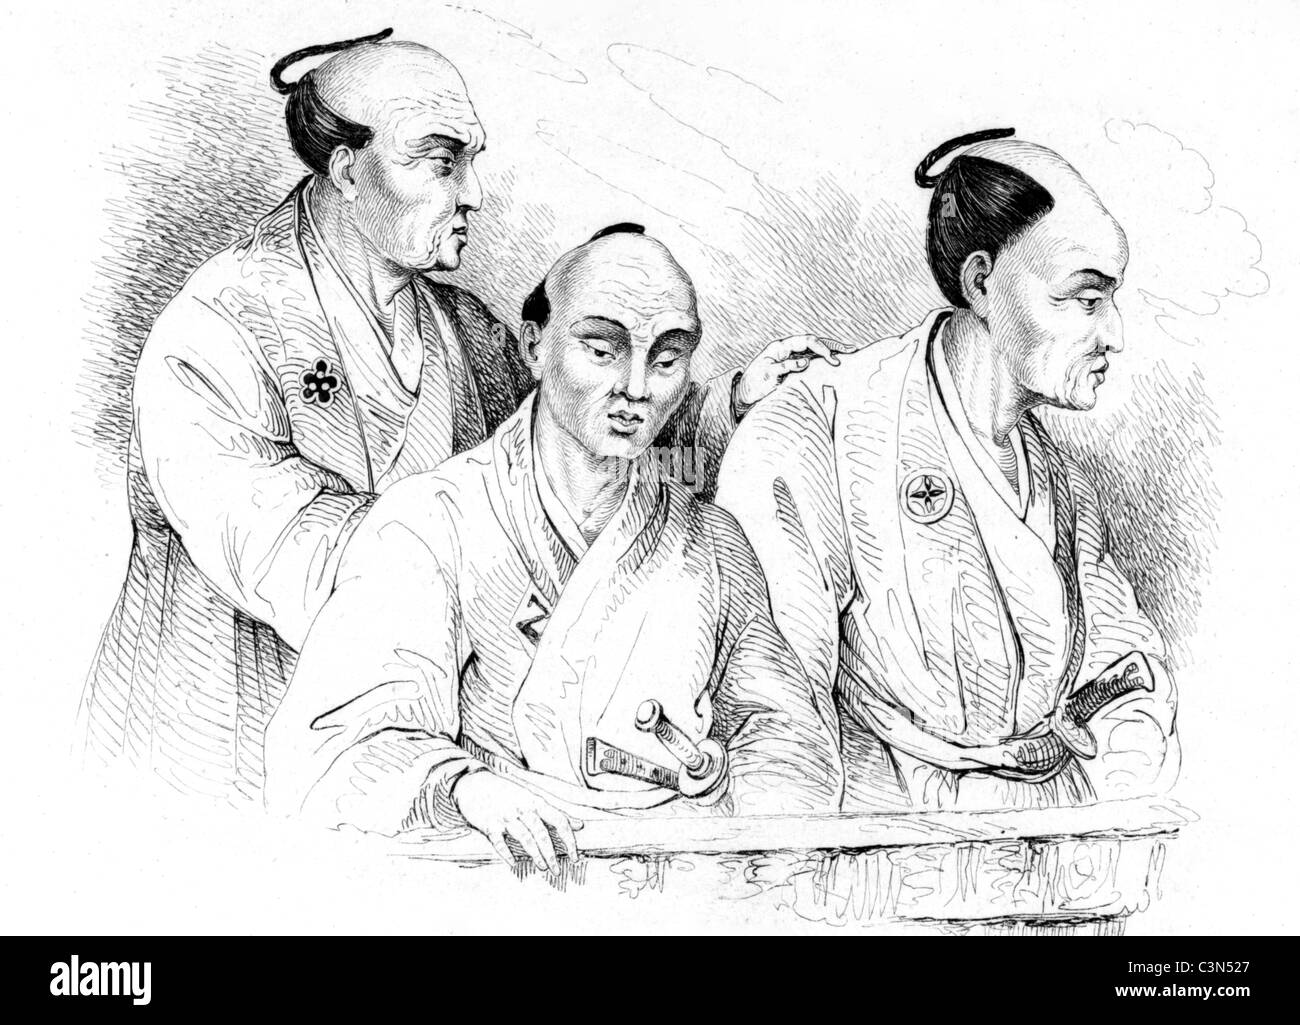 Porträts der Japaner im 19. Jahrhundert auf Gravur von 1834. Gestochen von Beyer nach Zeichnungen von Louis Auguste de Sainson. Stockfoto